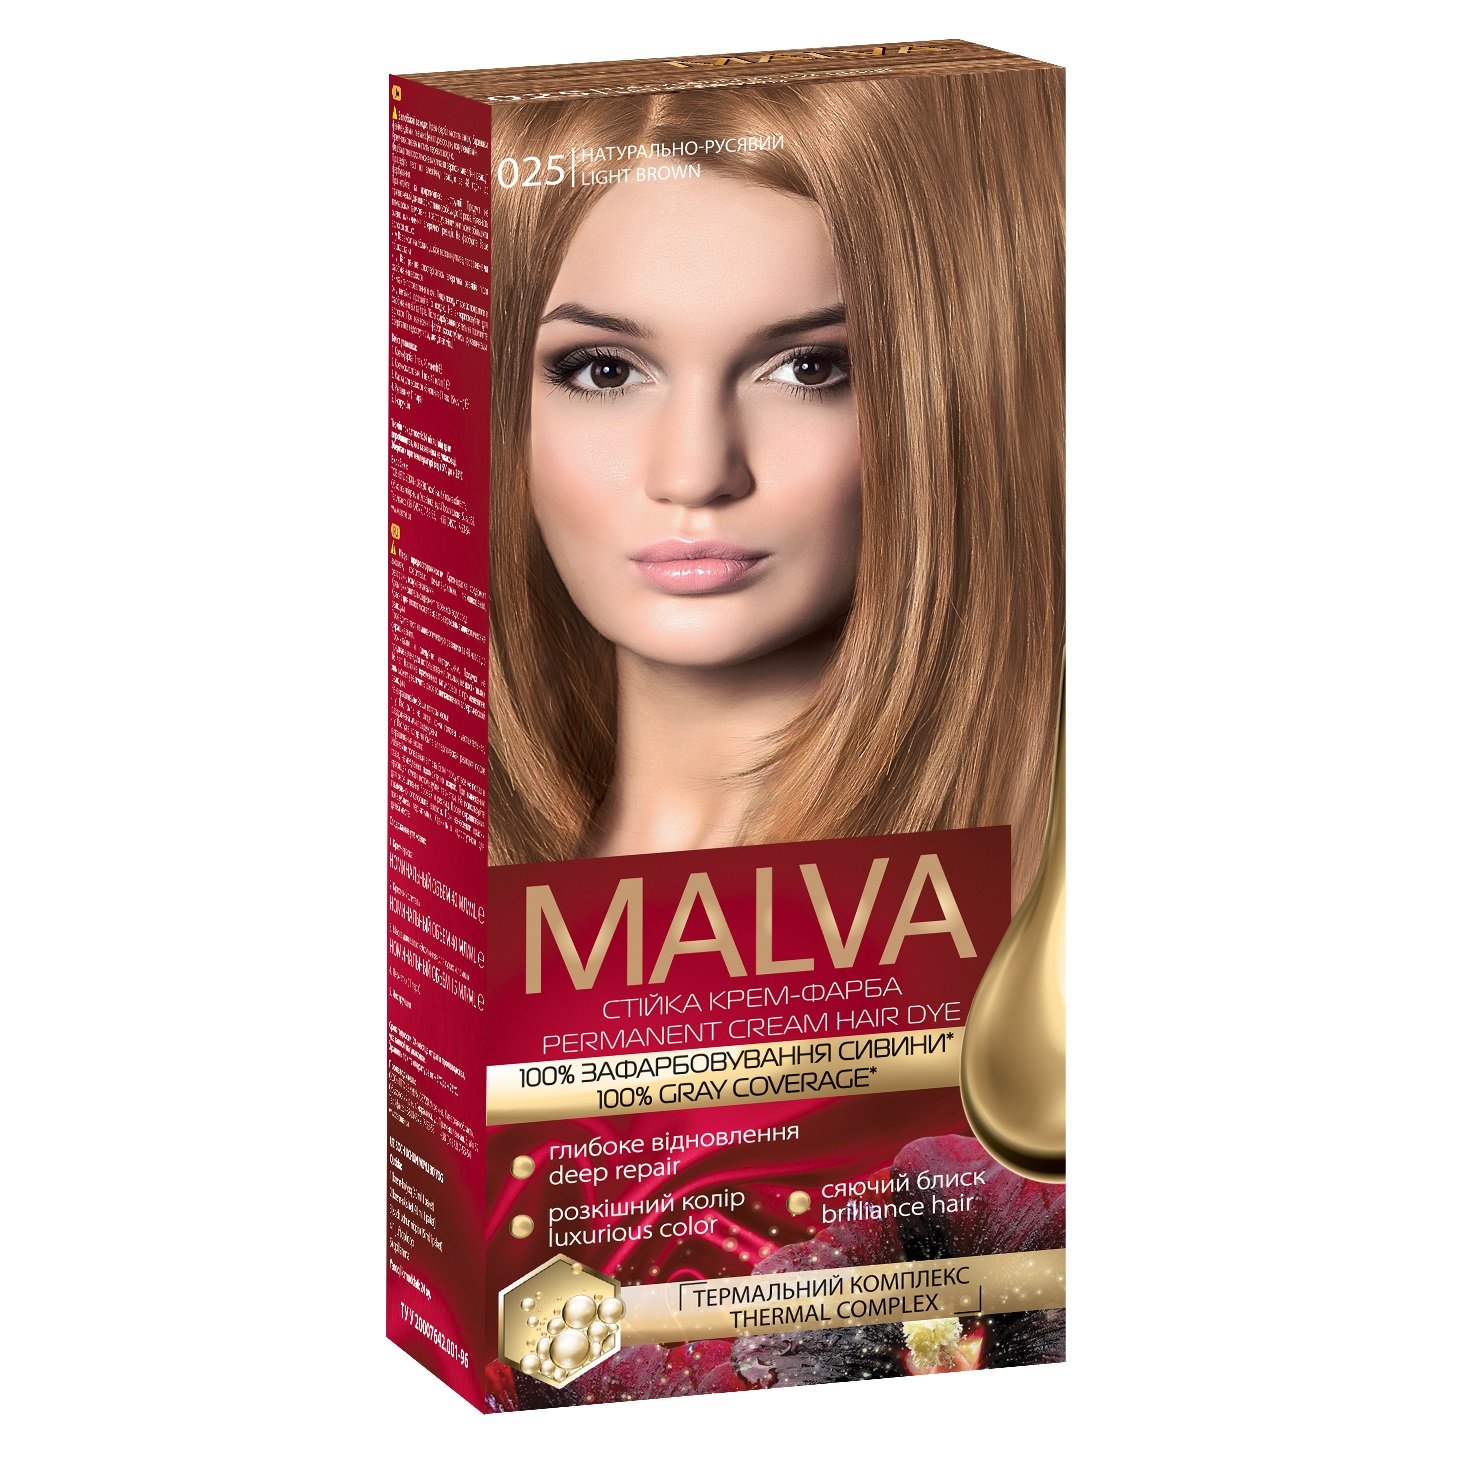 Крем-фарба для волосся Acme Color Malva, відтінок 025 (Натурально-русявий), 95 мл - фото 1